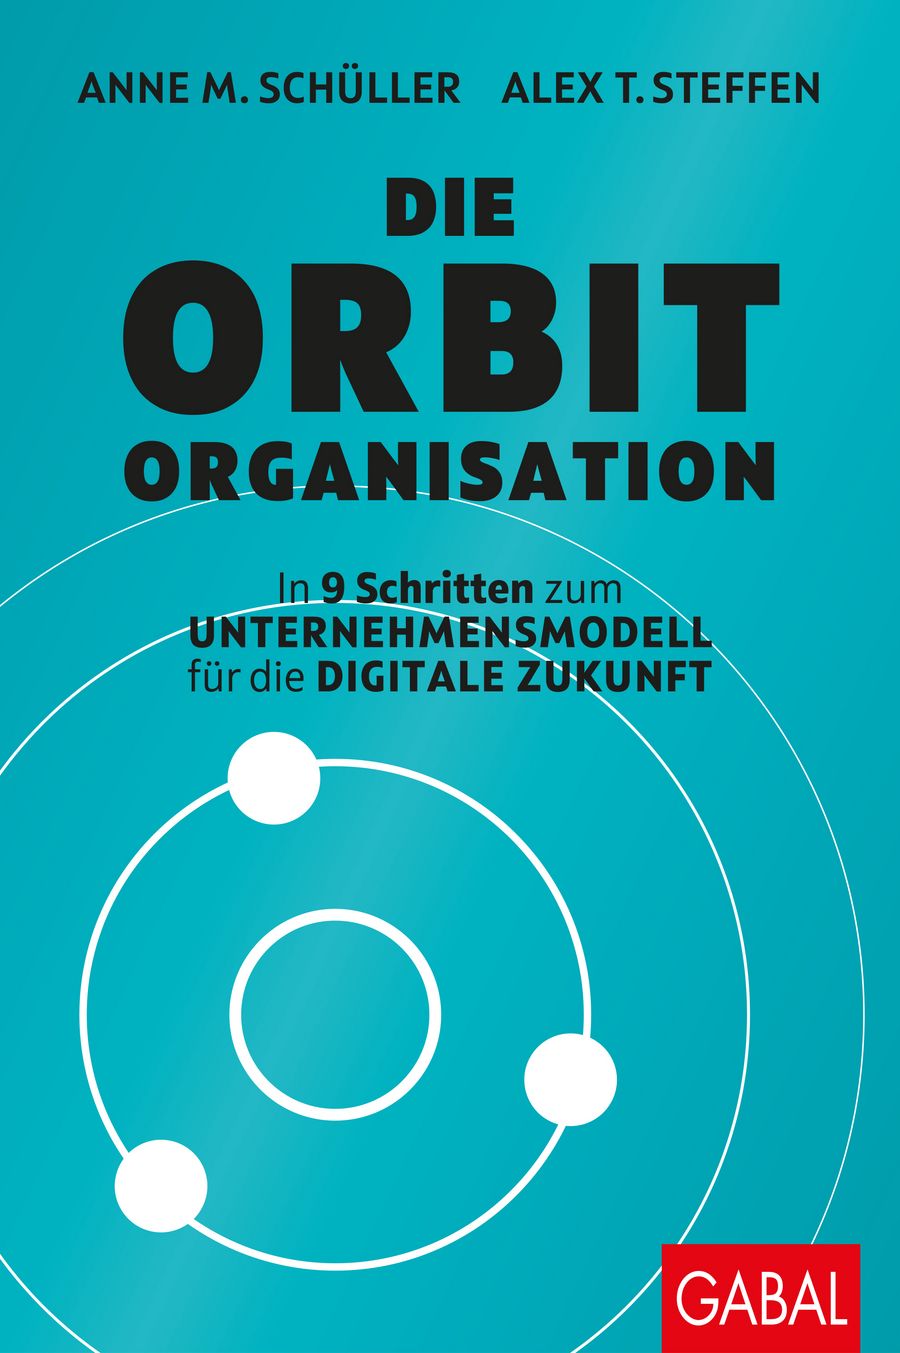 Anne M. Schüller, Alex T. Steffen Die Orbit-Organisation  In 9 Schritten zum Unternehmensmodell  für die digitale Zukunft 